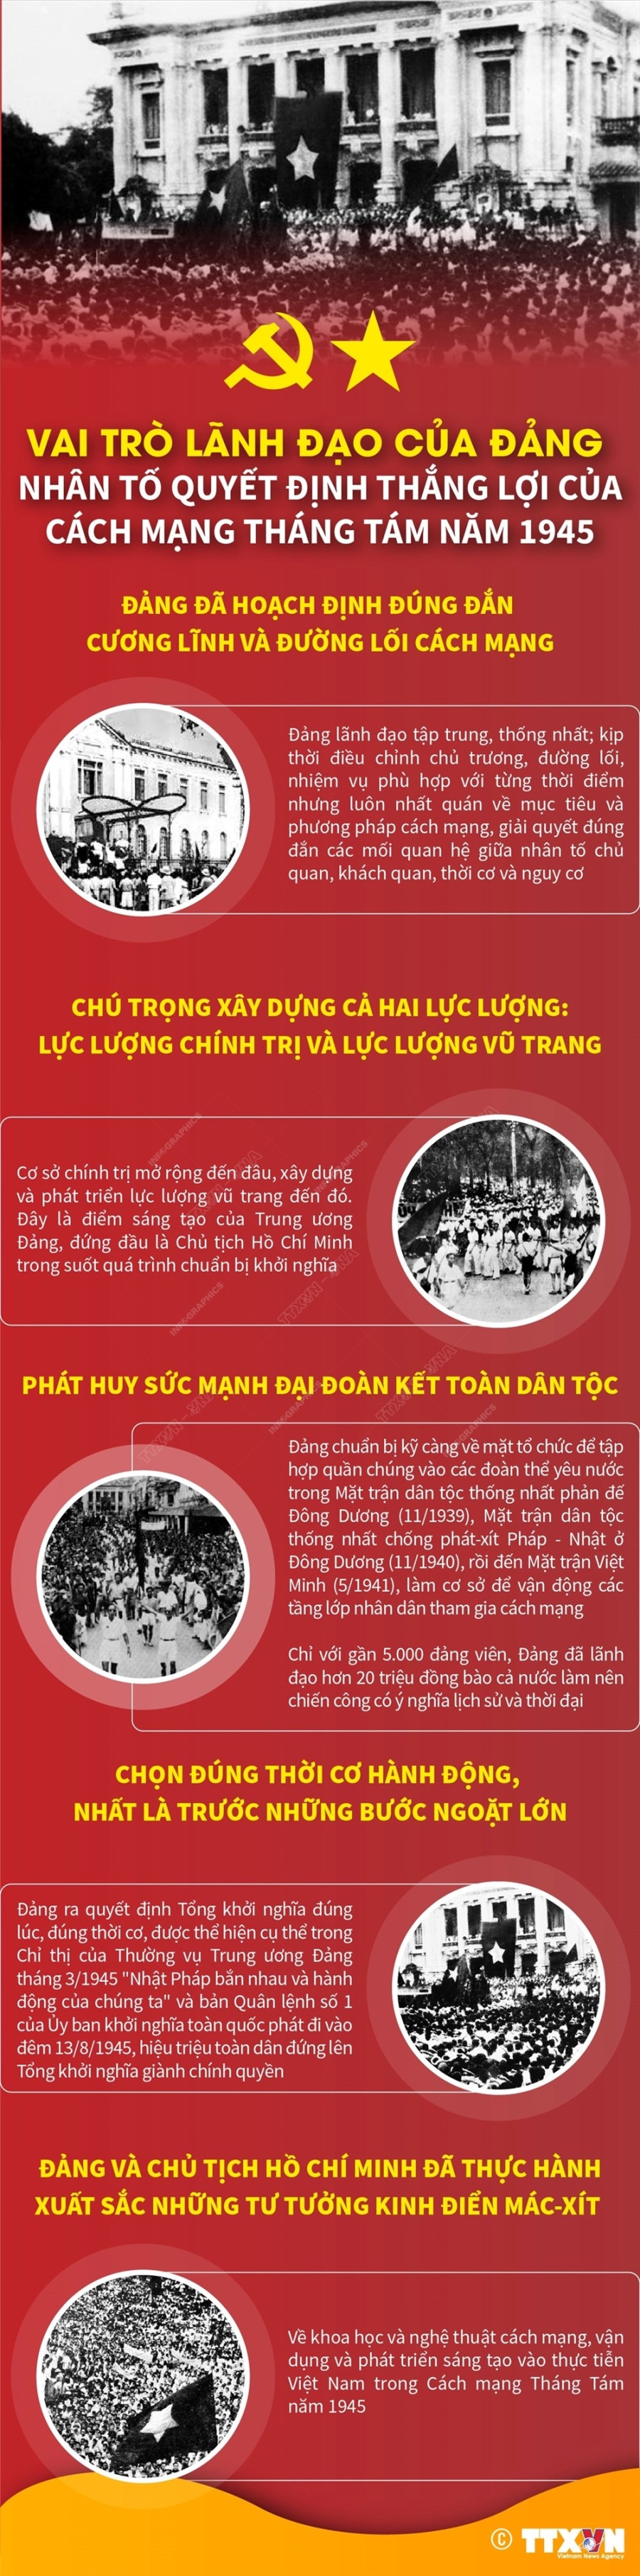 Nhan to quyet dinh thang loi cua Cach mang Thang Tam nam 1945 hinh anh 1